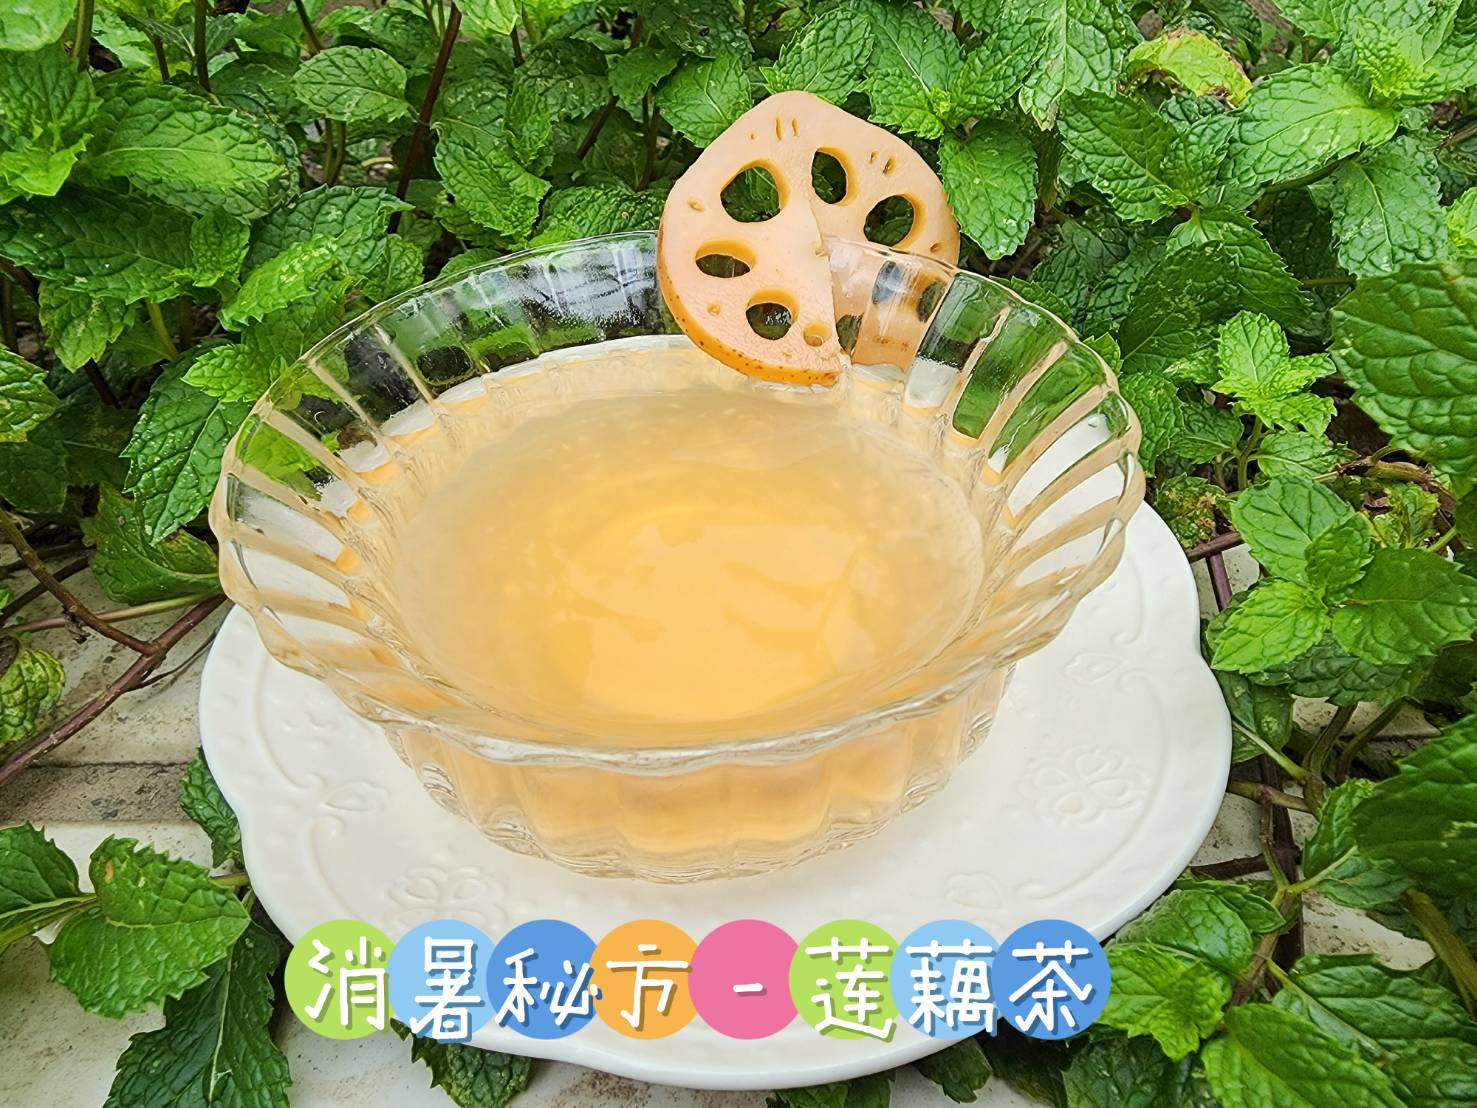 消暑秘方 - 蓮藕茶 (電鍋版)